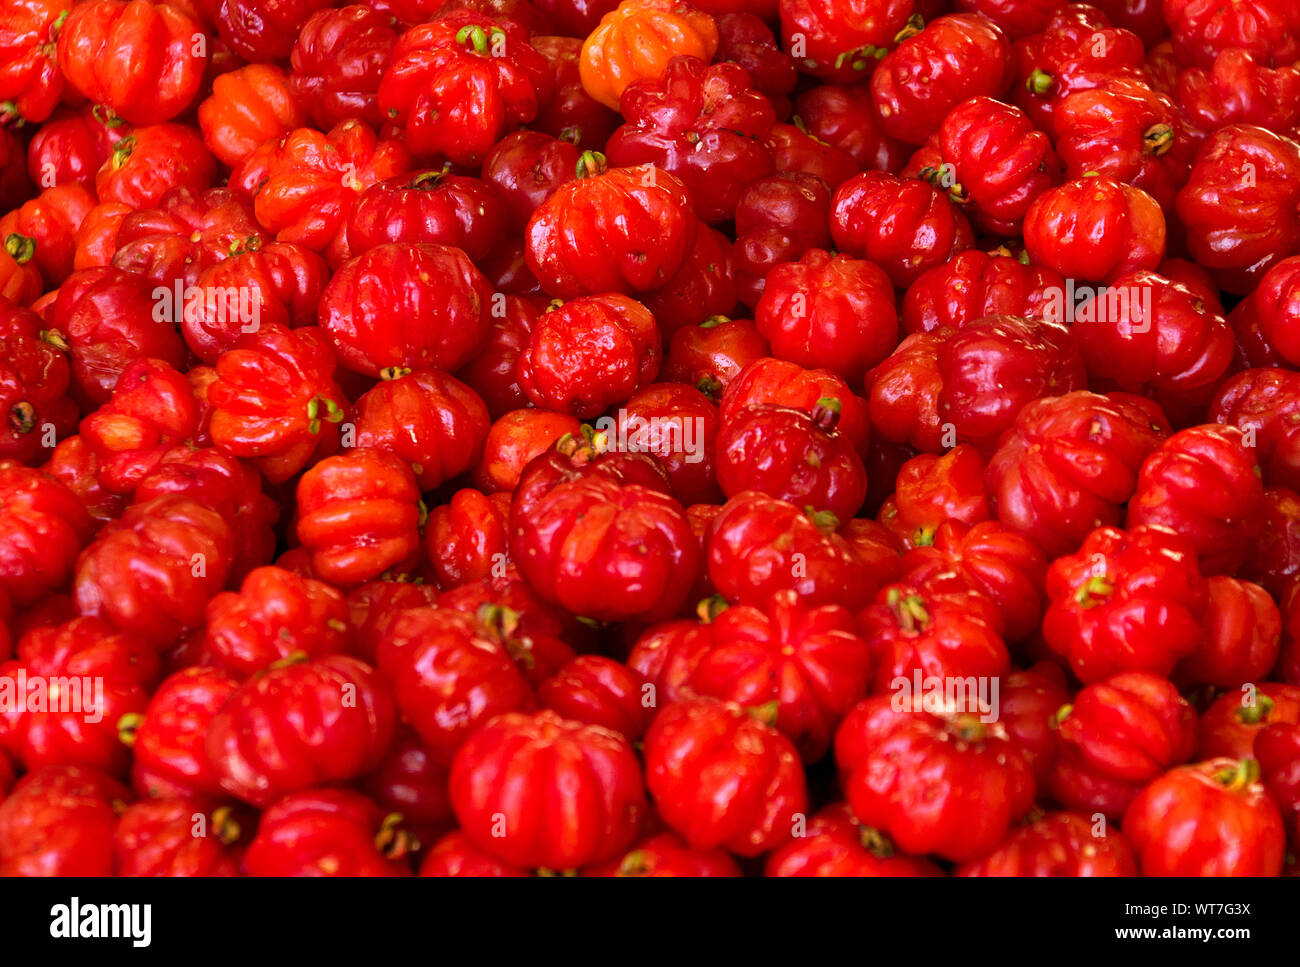 Disparo de fotograma completo de reliquia de tomates para la venta en el mercado Foto de stock